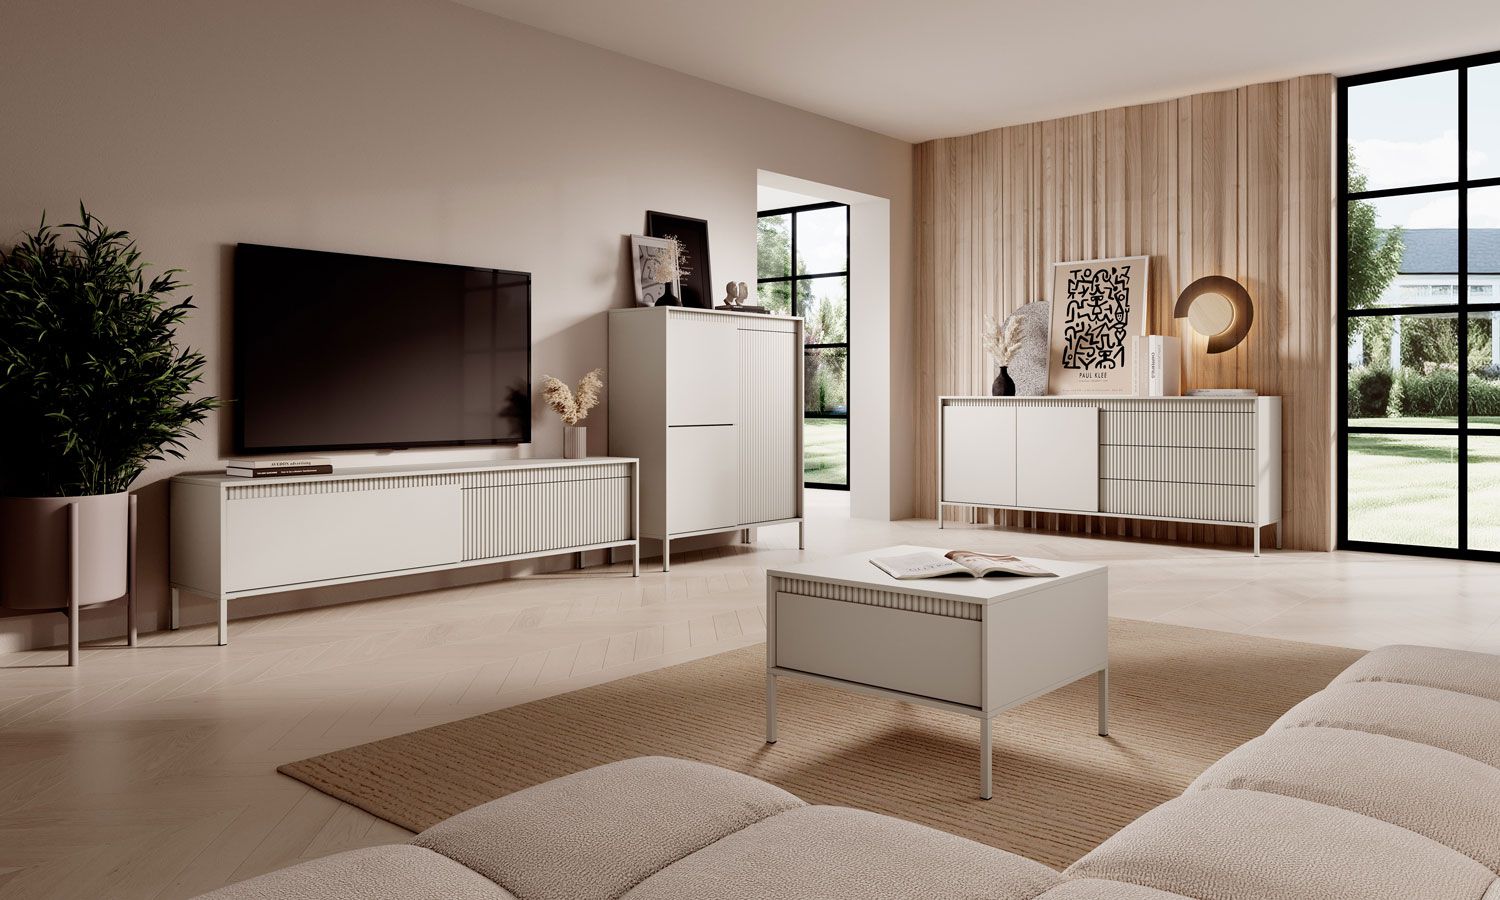 Stilvolles Wohnzimmer - Set B Balta, 4-teilig, Farbe: Beige, Push-to-open Funktion, ABS-Kantenschutz, Beine: Metall